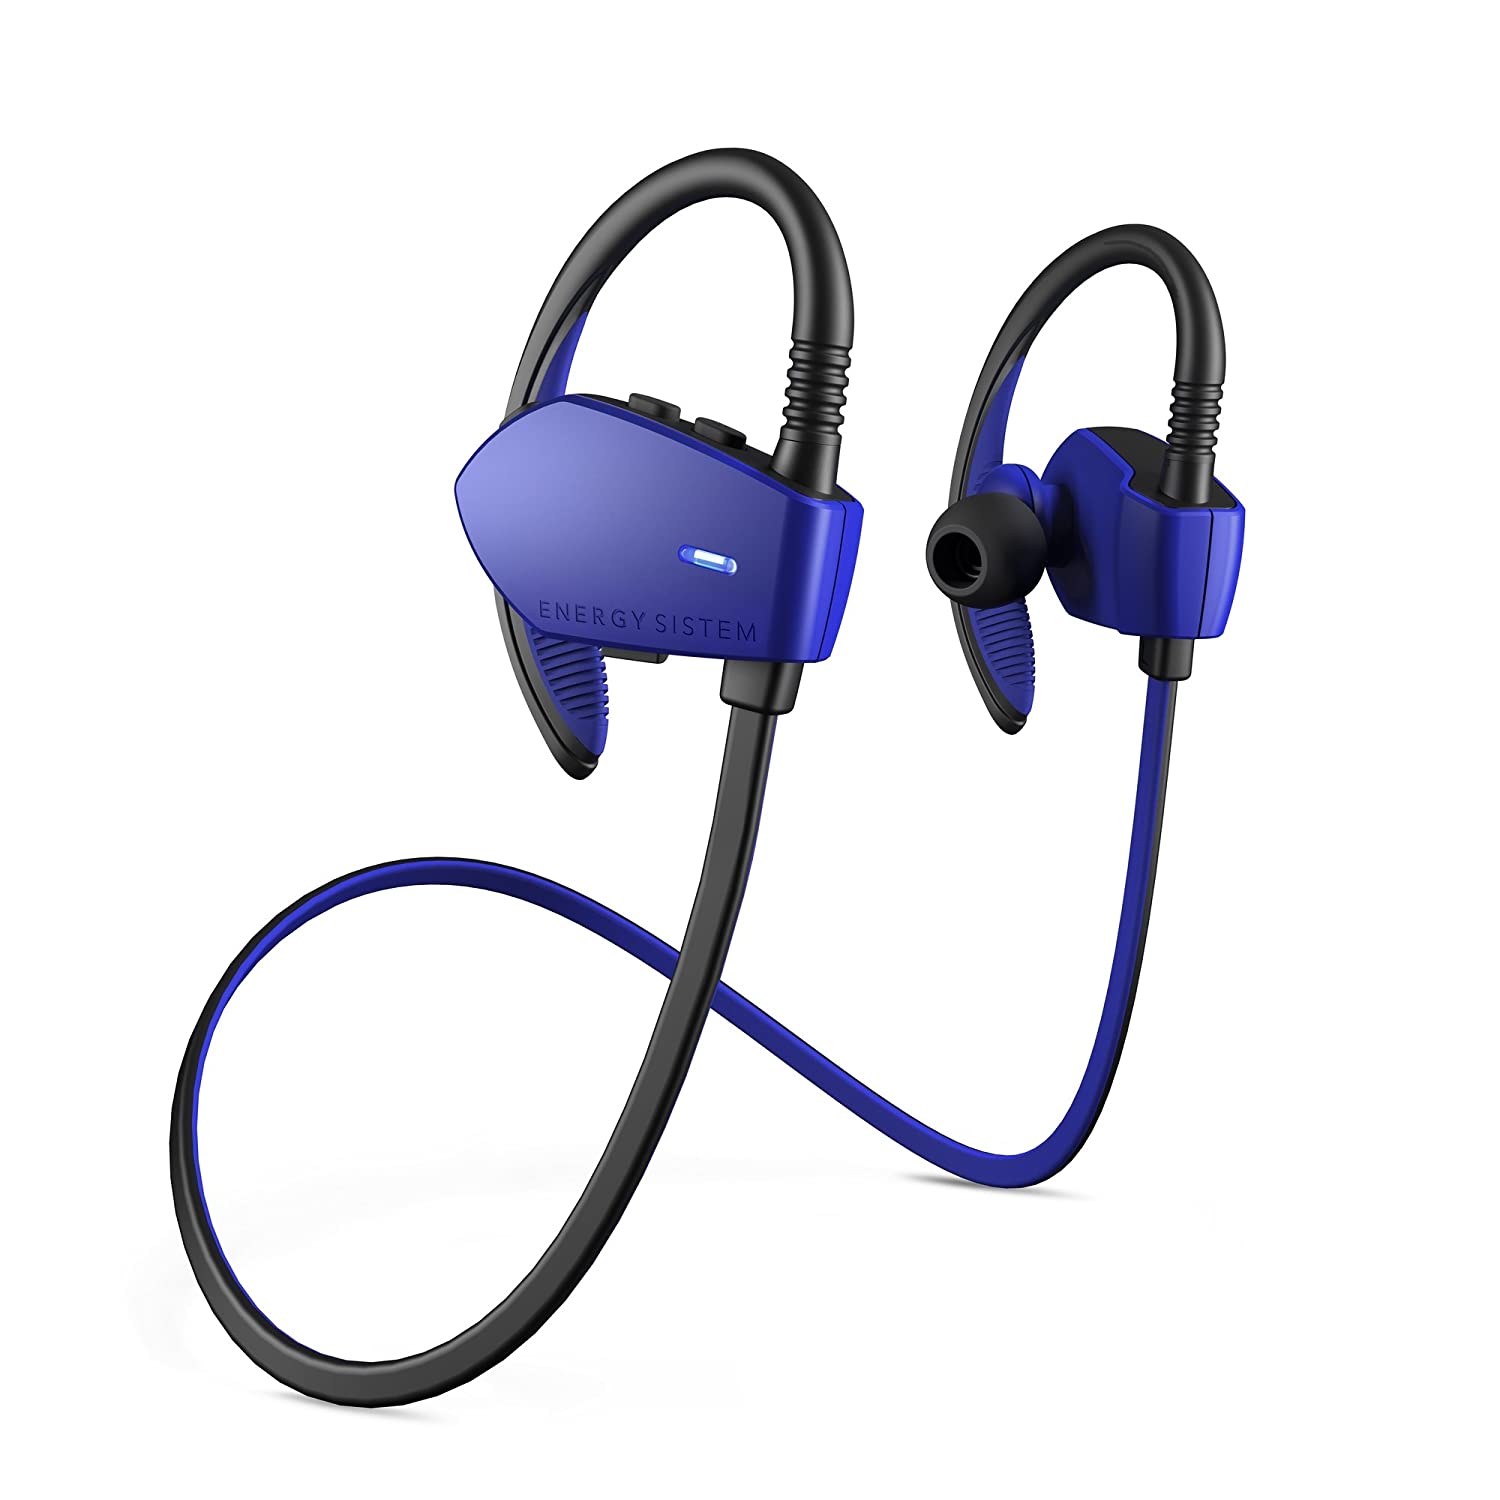 Open Box, Unused Energy Sistem Sport 1 Wireless Bluetooth in Ear Earphone with Mic (Blue)